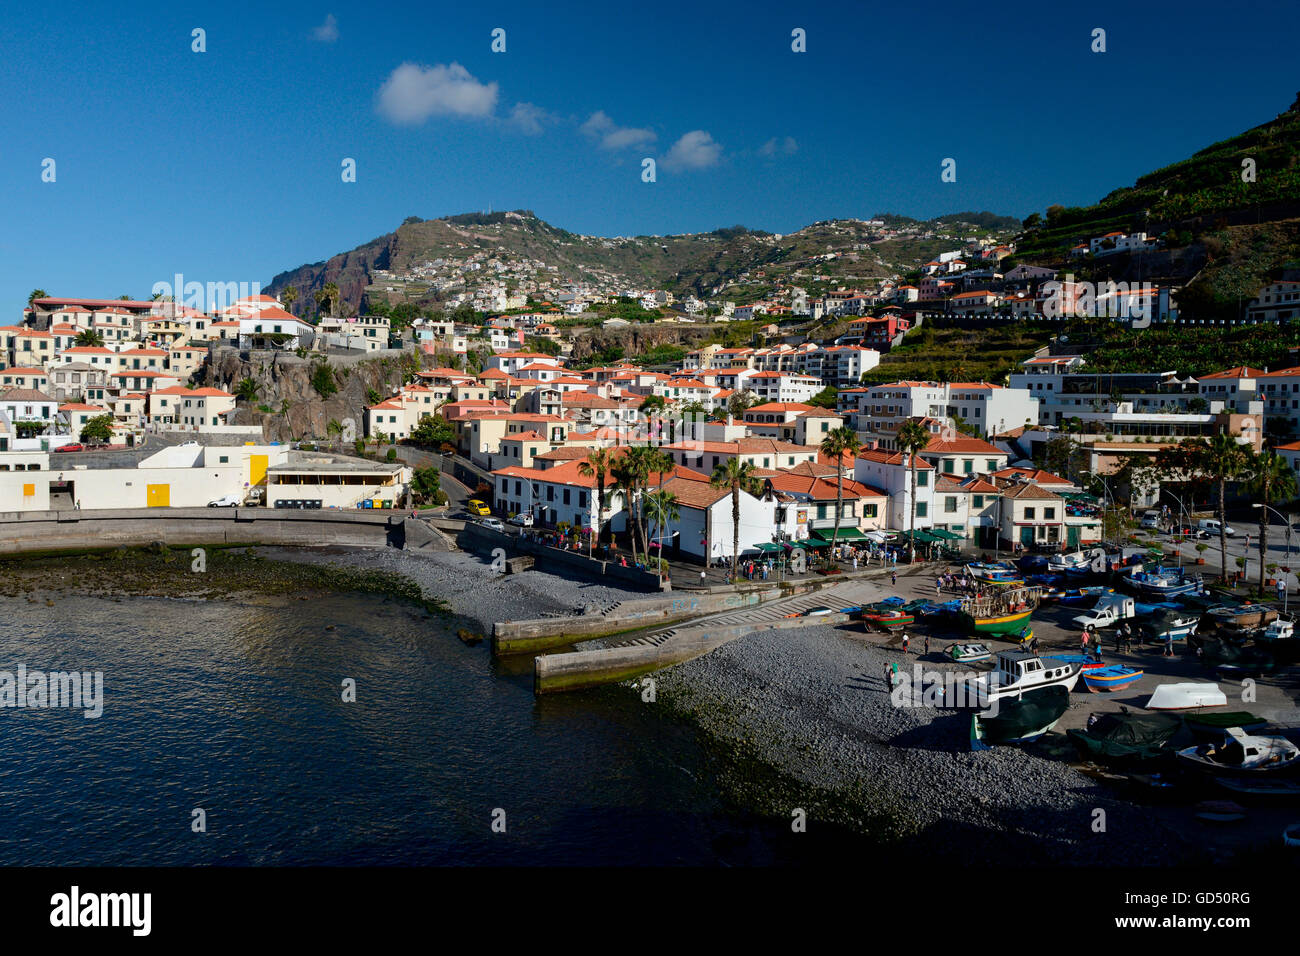 Camara de Lobos, Hafen und Dorf, Madeira, Portugal, Europa, Fischerdorf Stock Photo